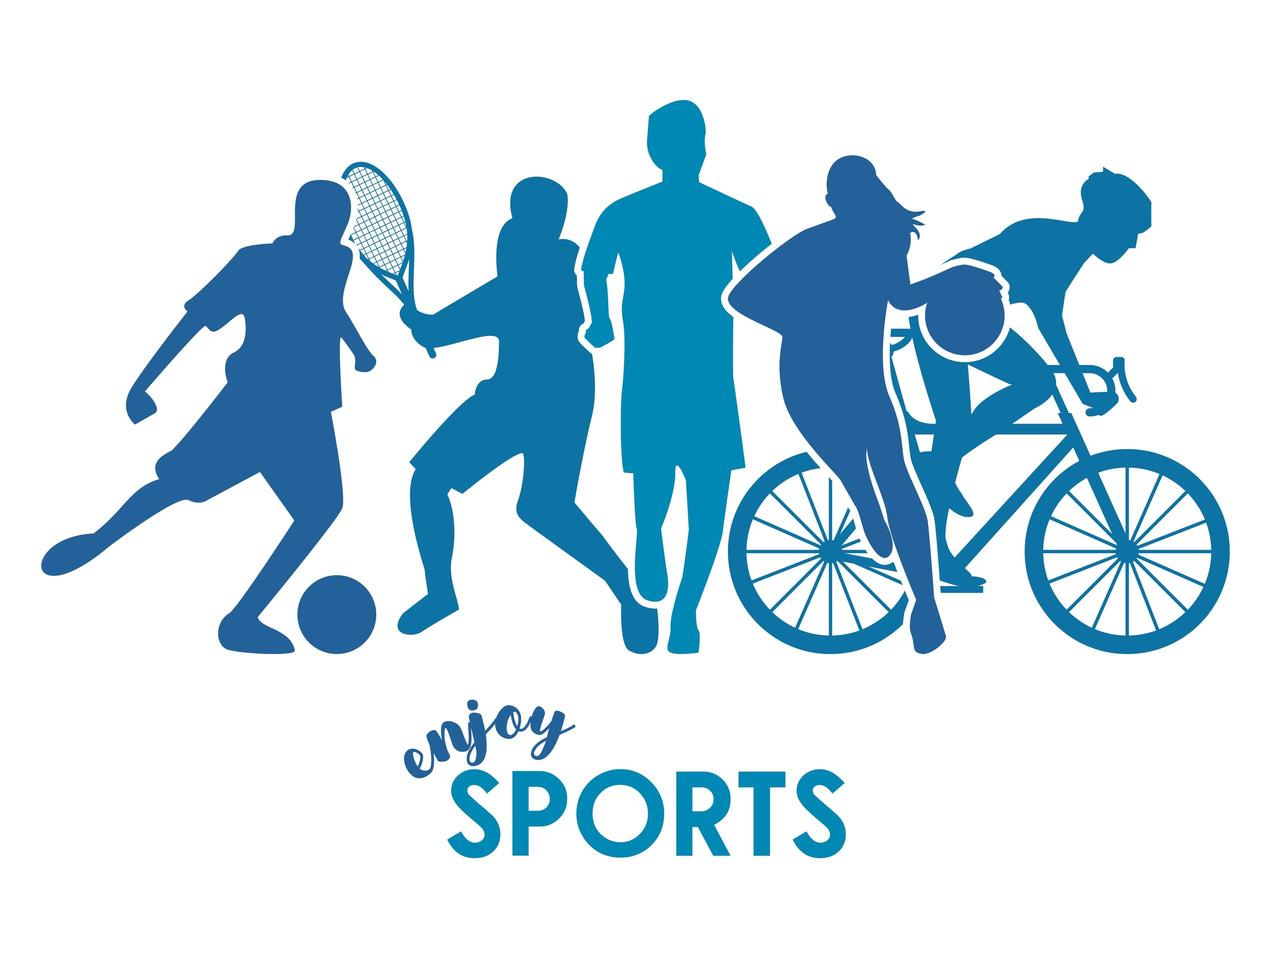 cartel de tiempo deportivo con siluetas de atleta azul vector